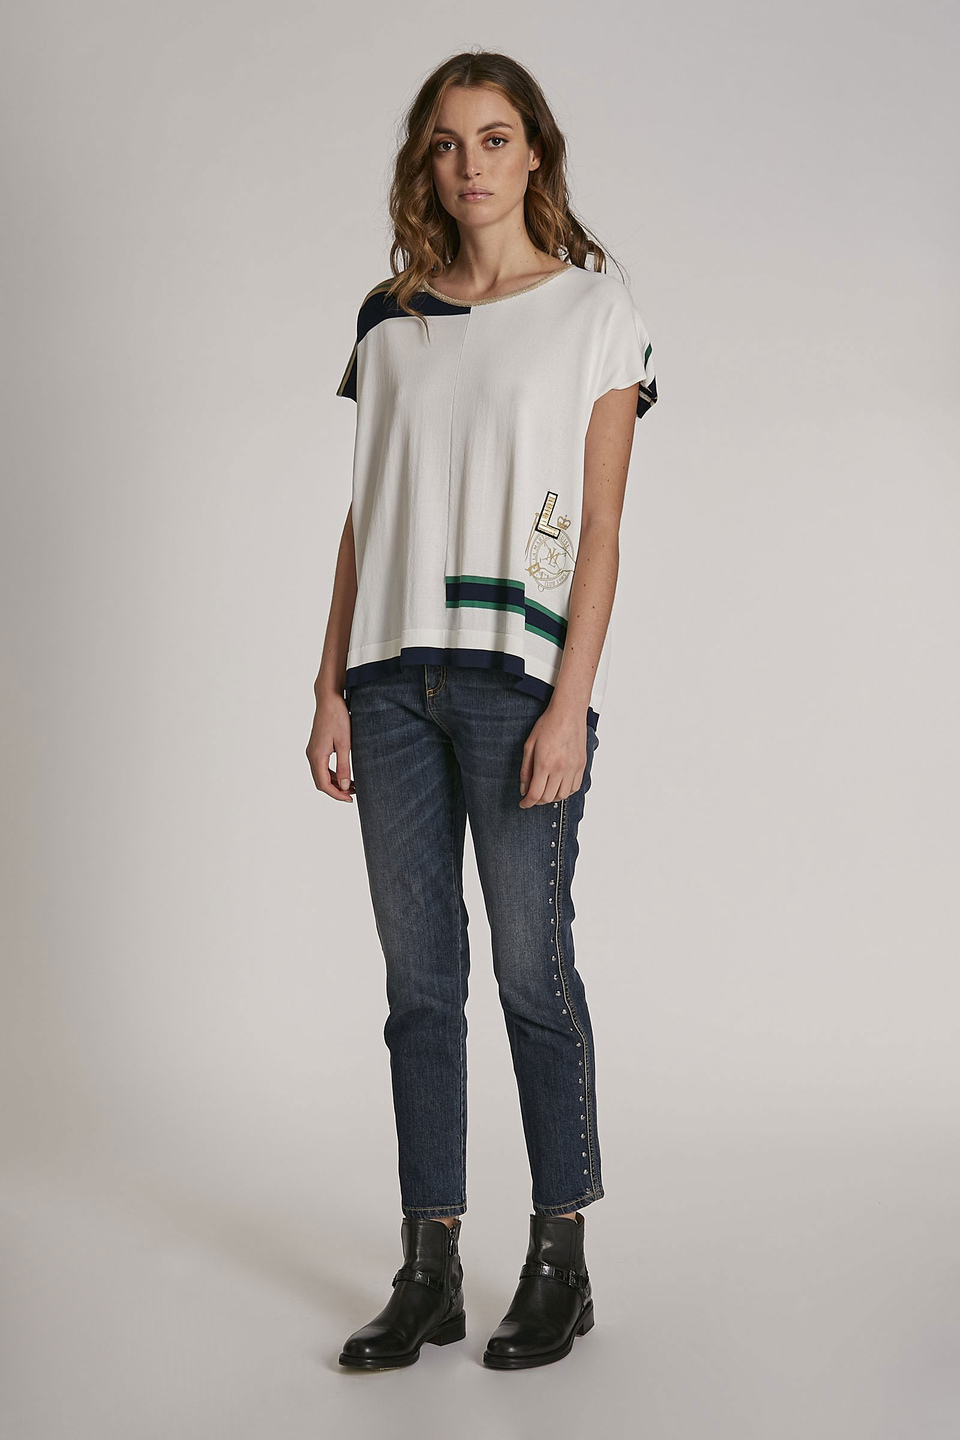 Women's oversized cotton logo T-shirt | La Martina - Official Online Shop